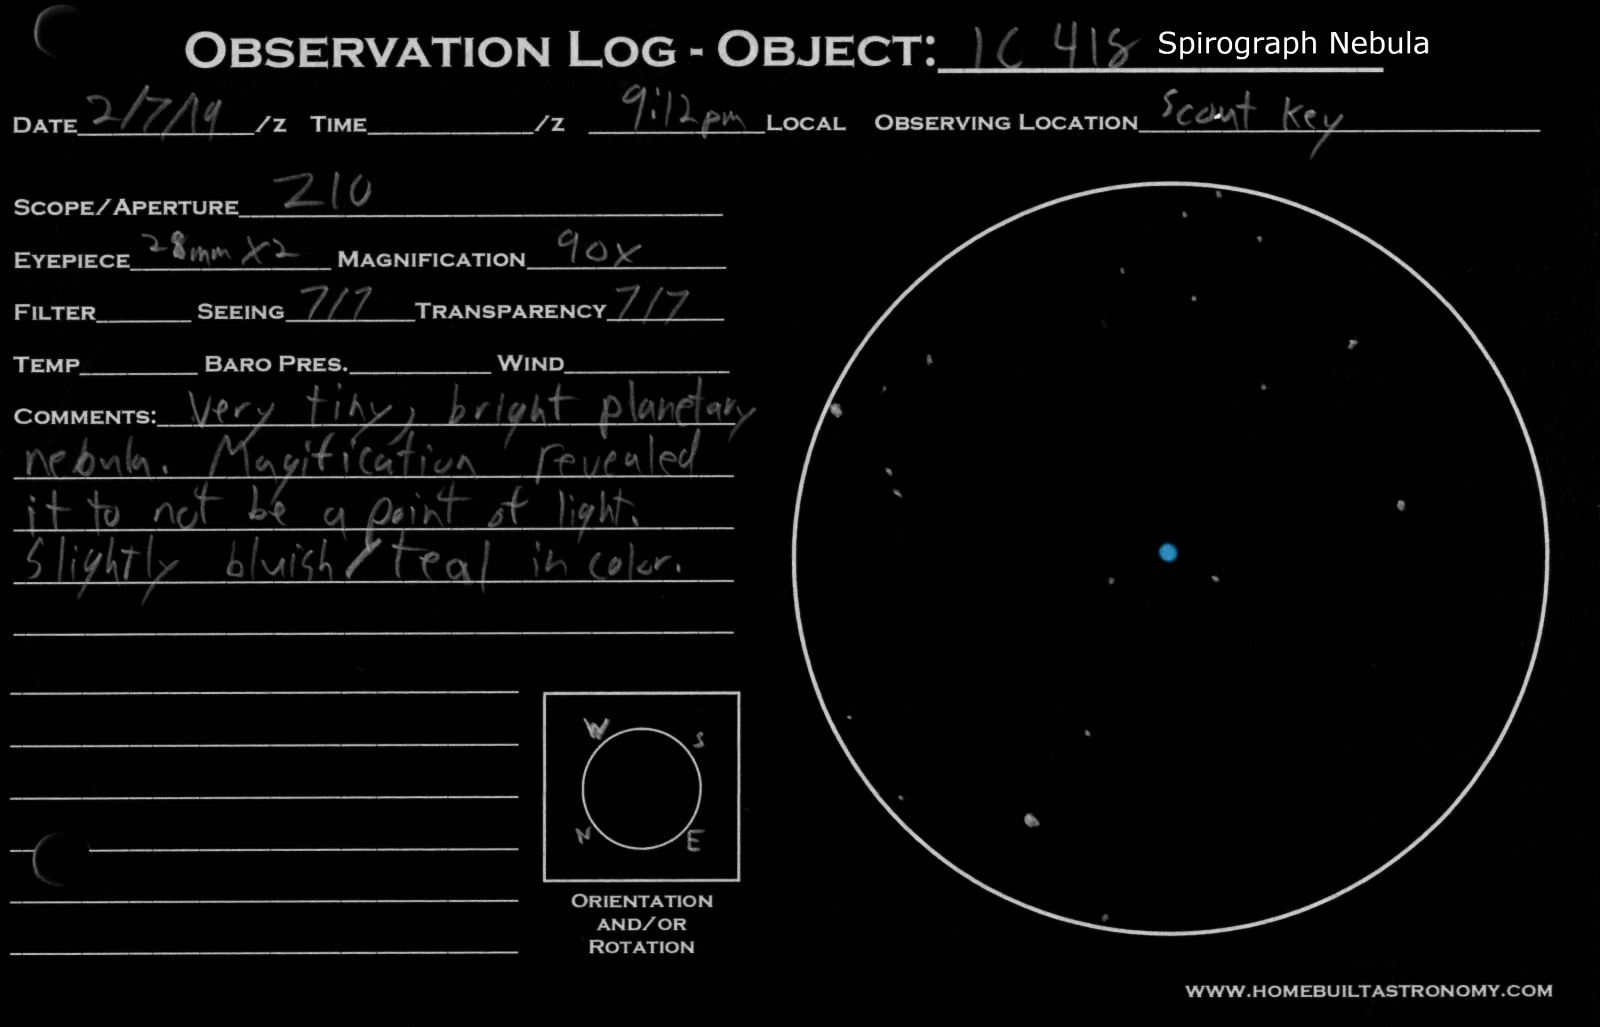 Spirograph Nebula IC 418